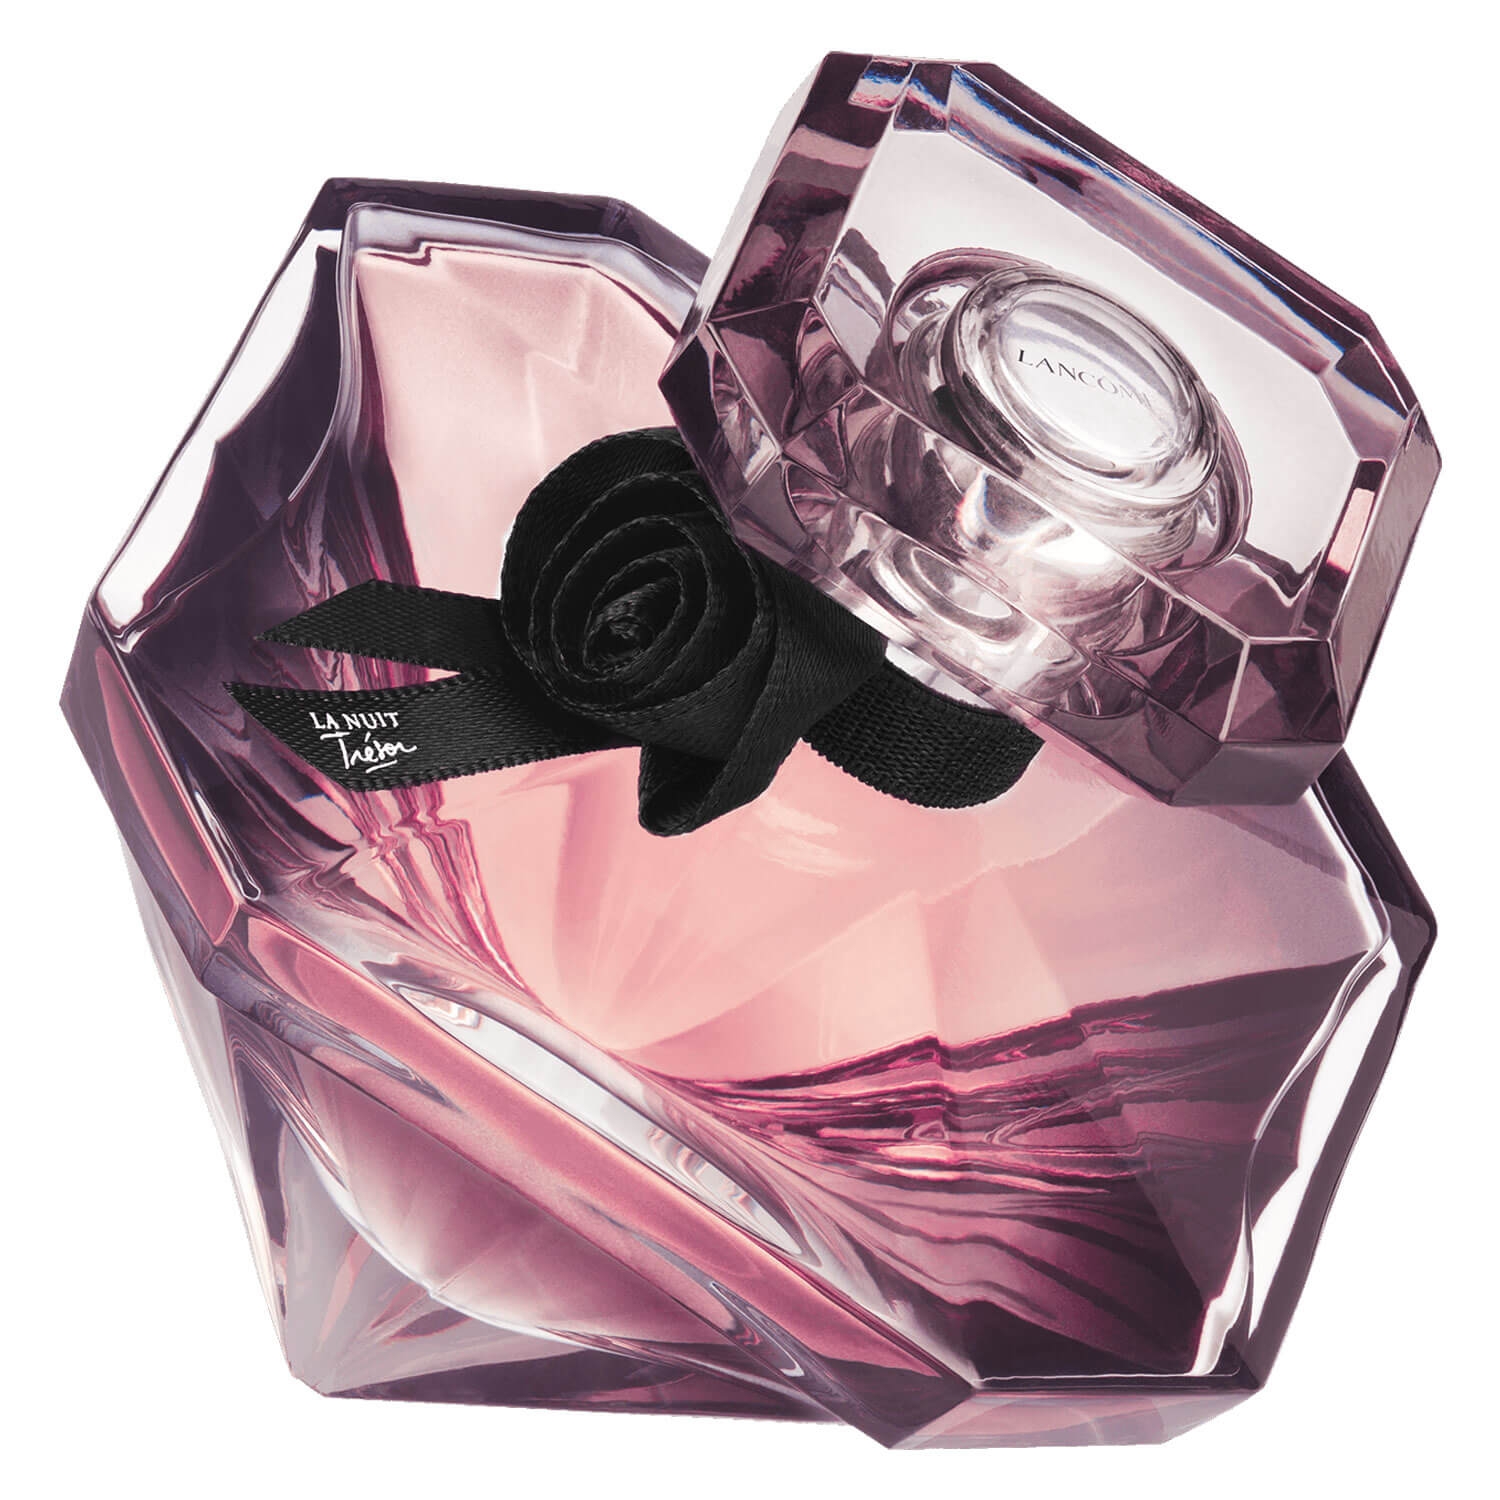 Produktbild von Trésor - La Nuit Trésor Eau de Parfum